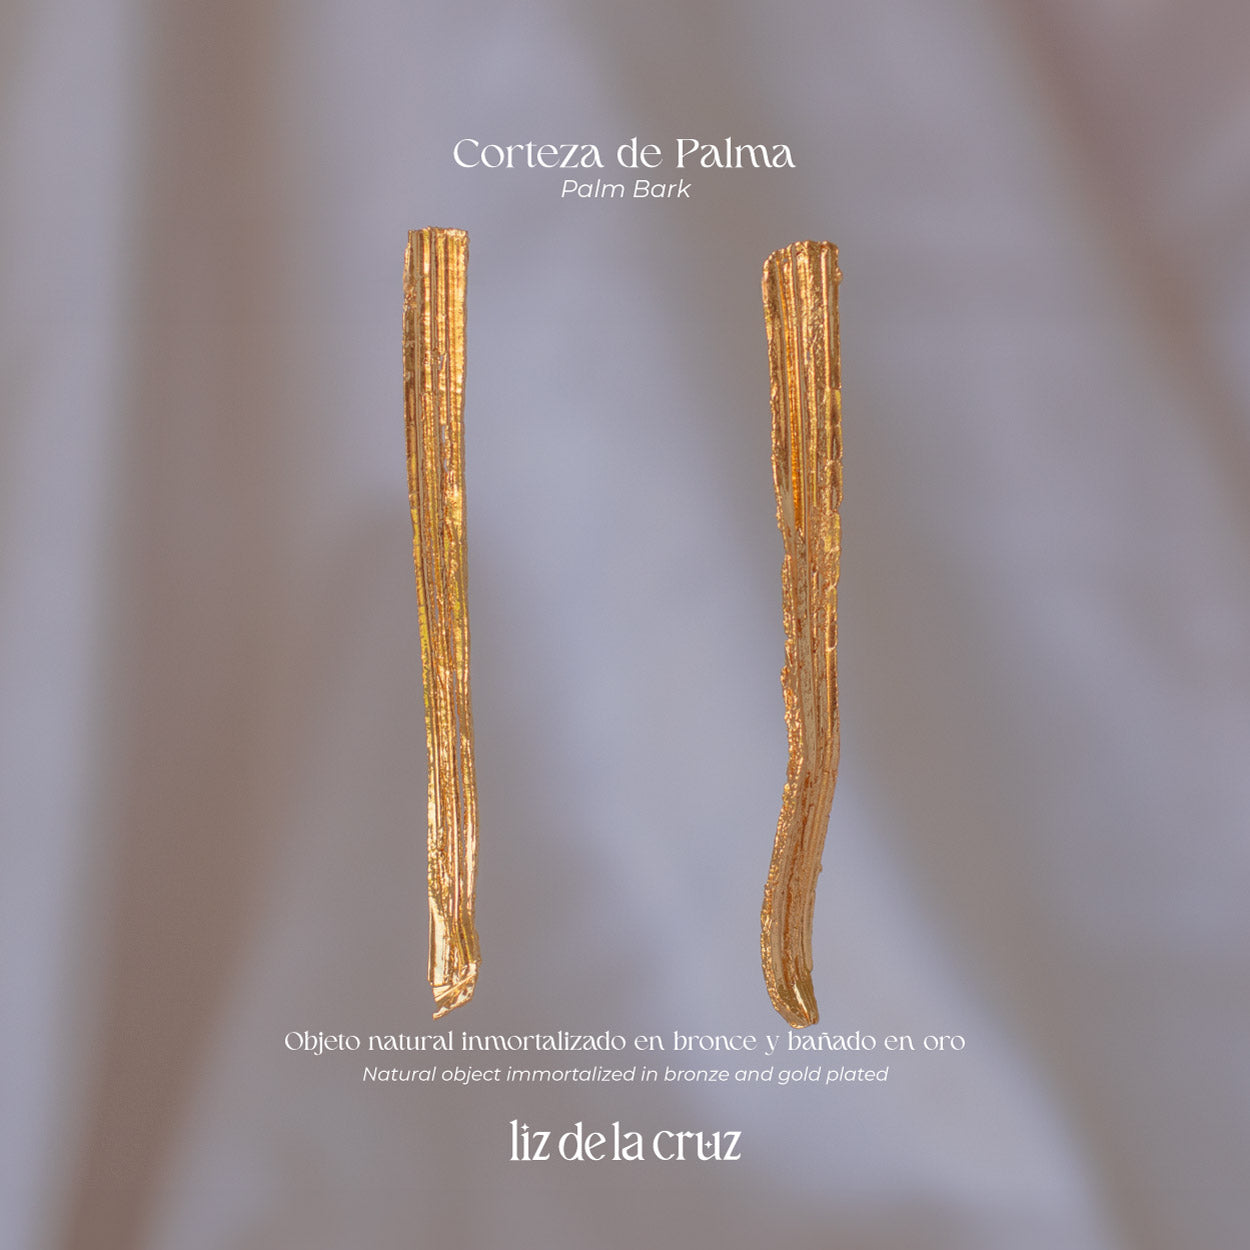 Aretes Corteza Palma Large en bronce con baño de oro de 24k, capturando la textura única de la corteza de palma natural.